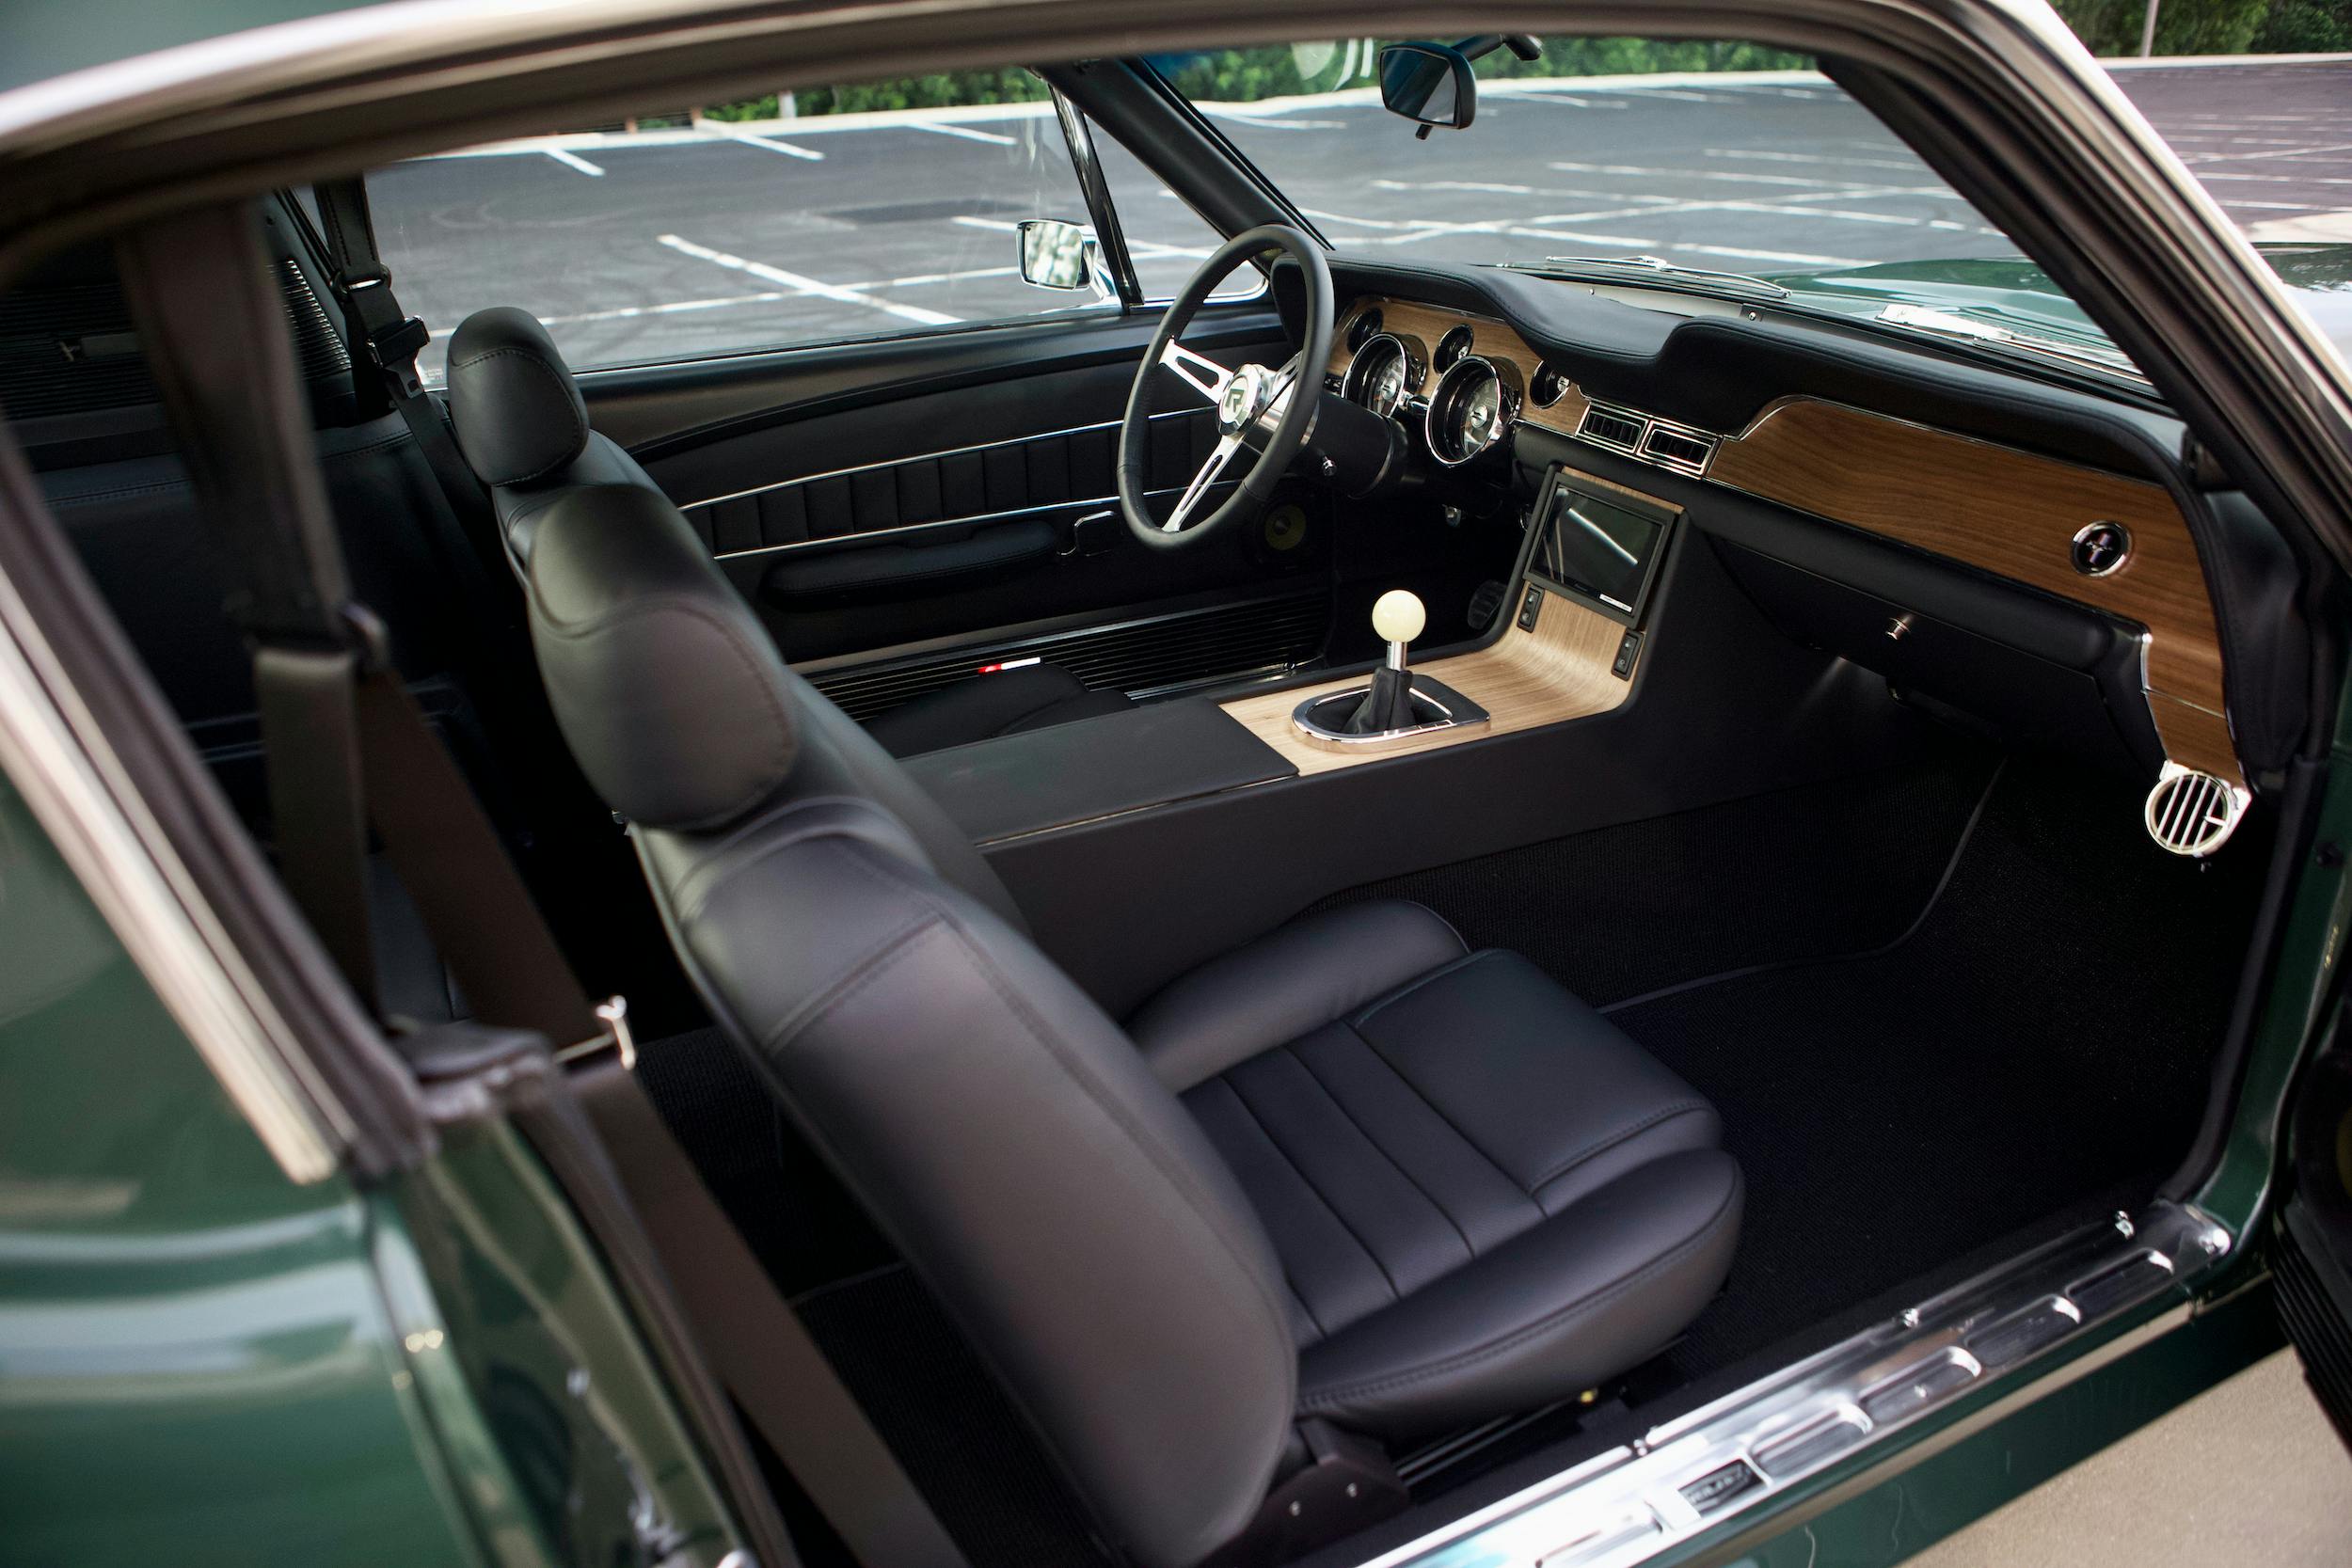 Revology 1968 Mustang GT Cobra Jet interior